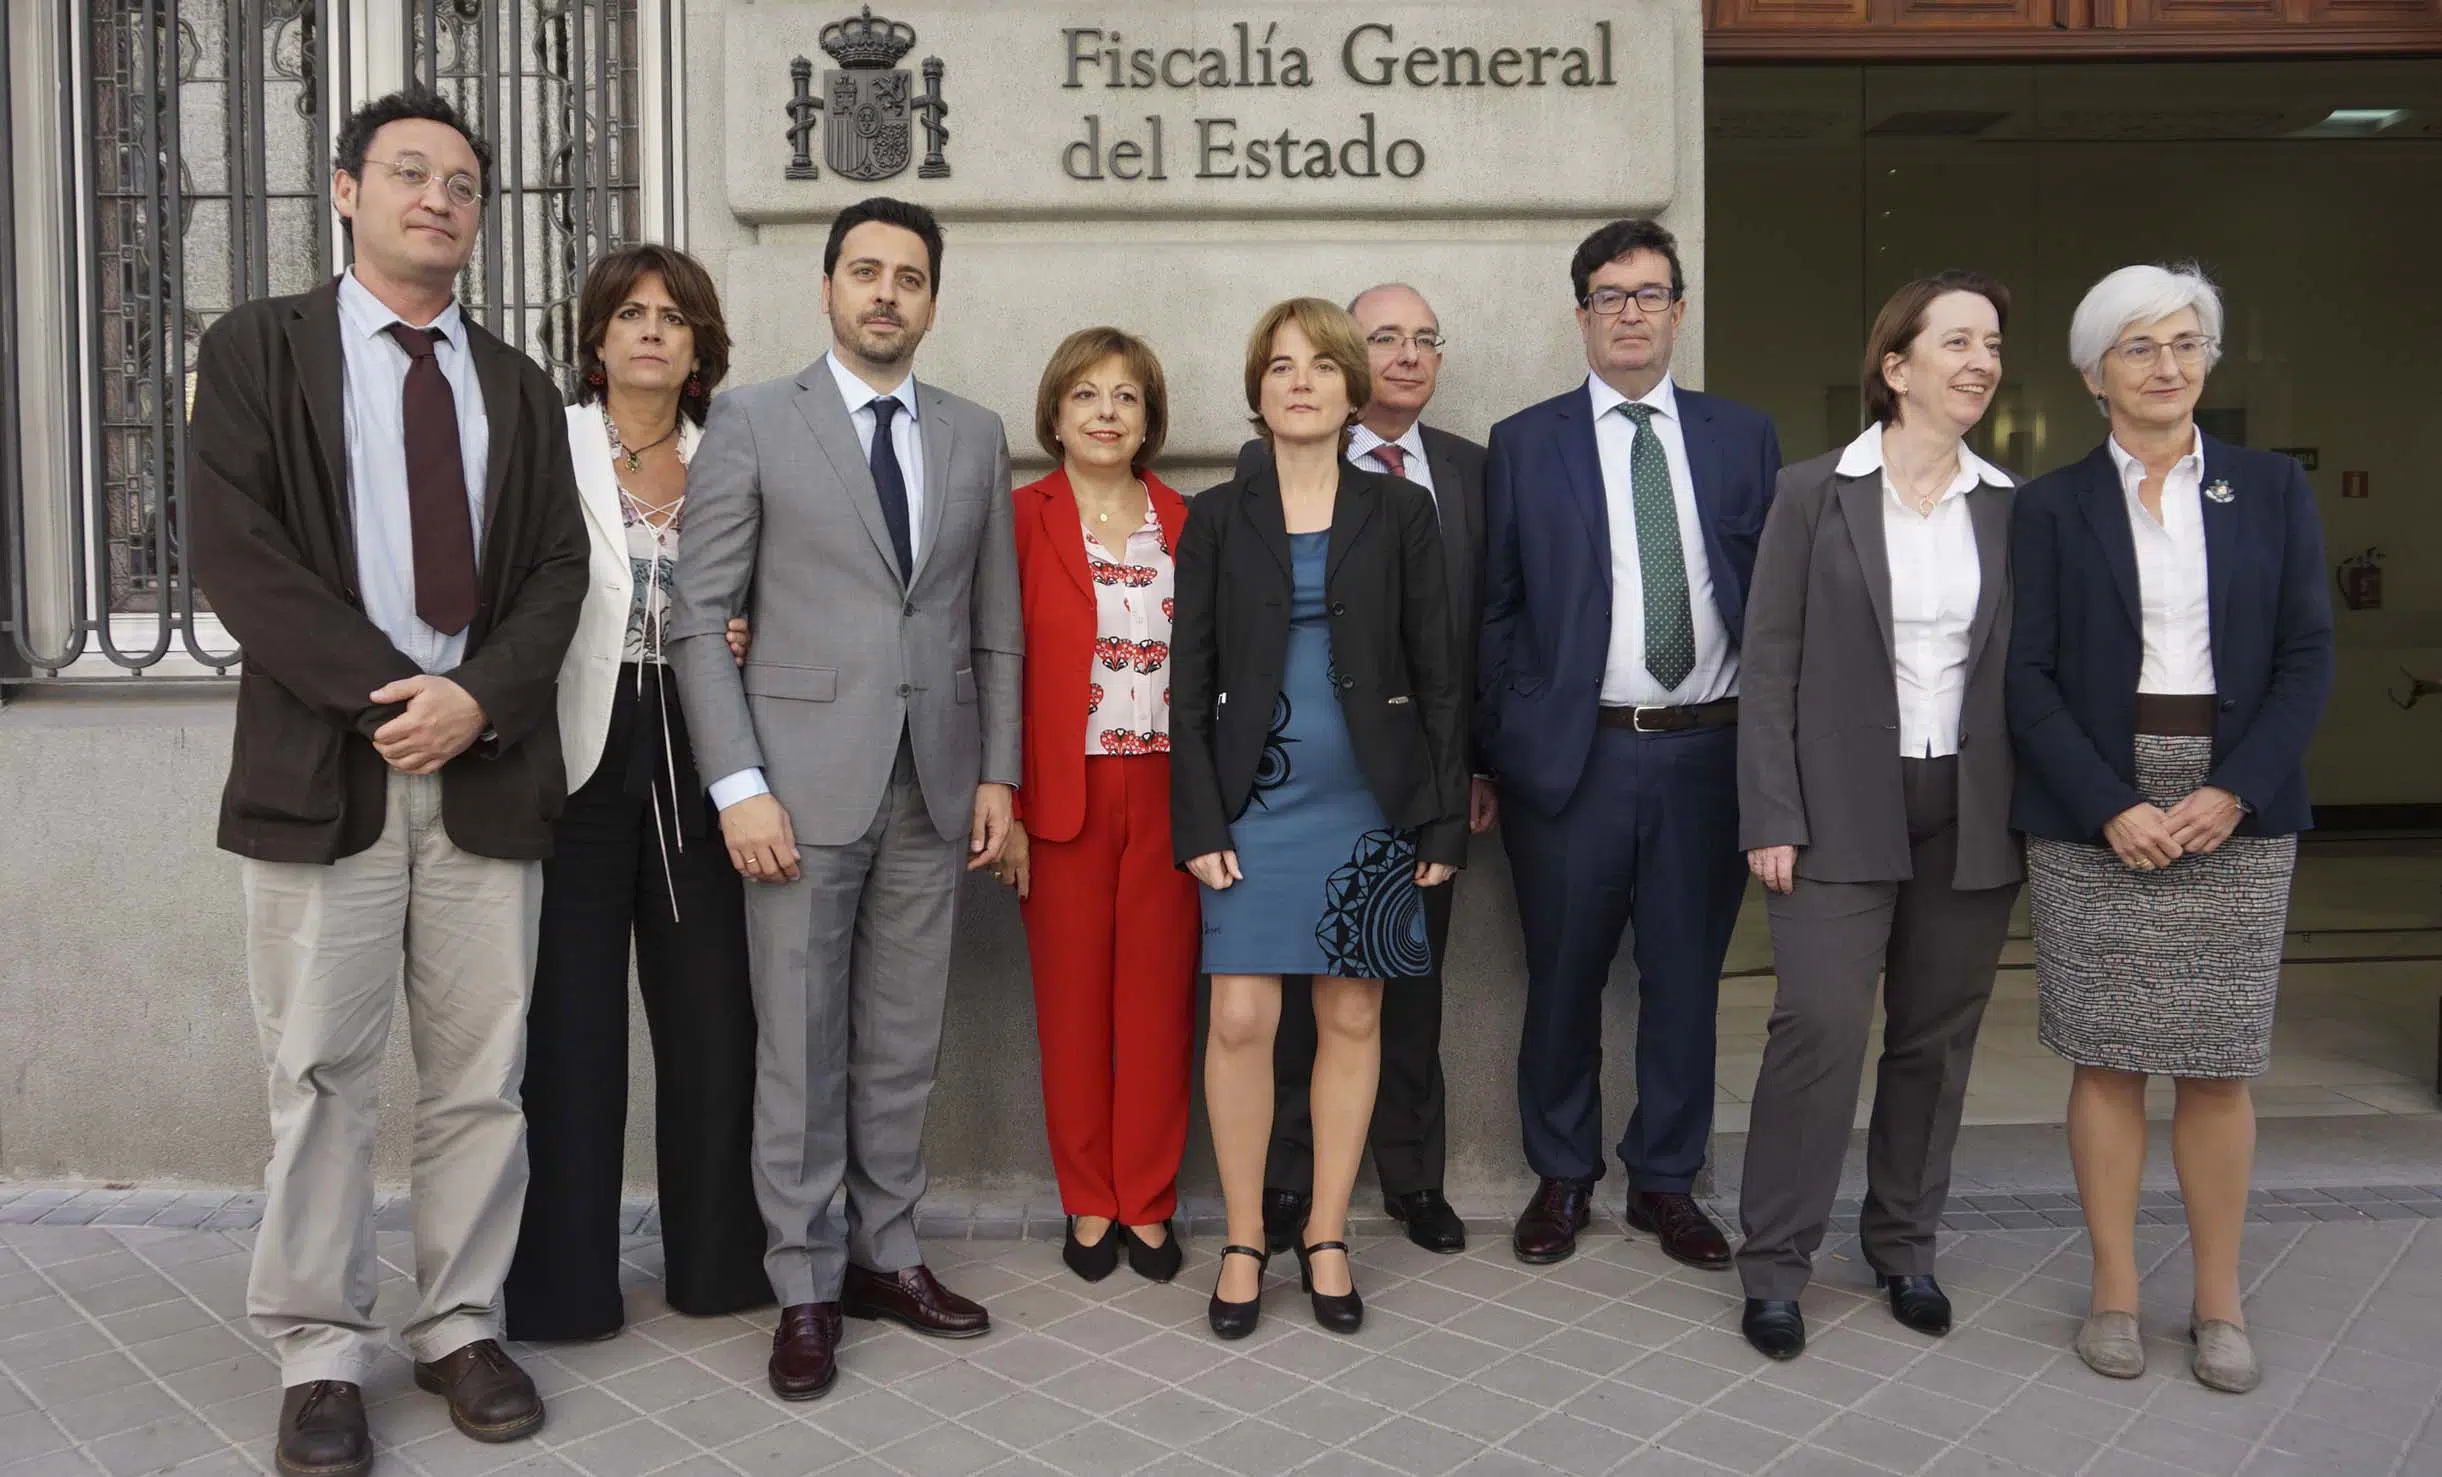 El anuncio de que la elegida como fiscal general del Estado es Segarra se demora hasta el Consejo de Ministros del viernes